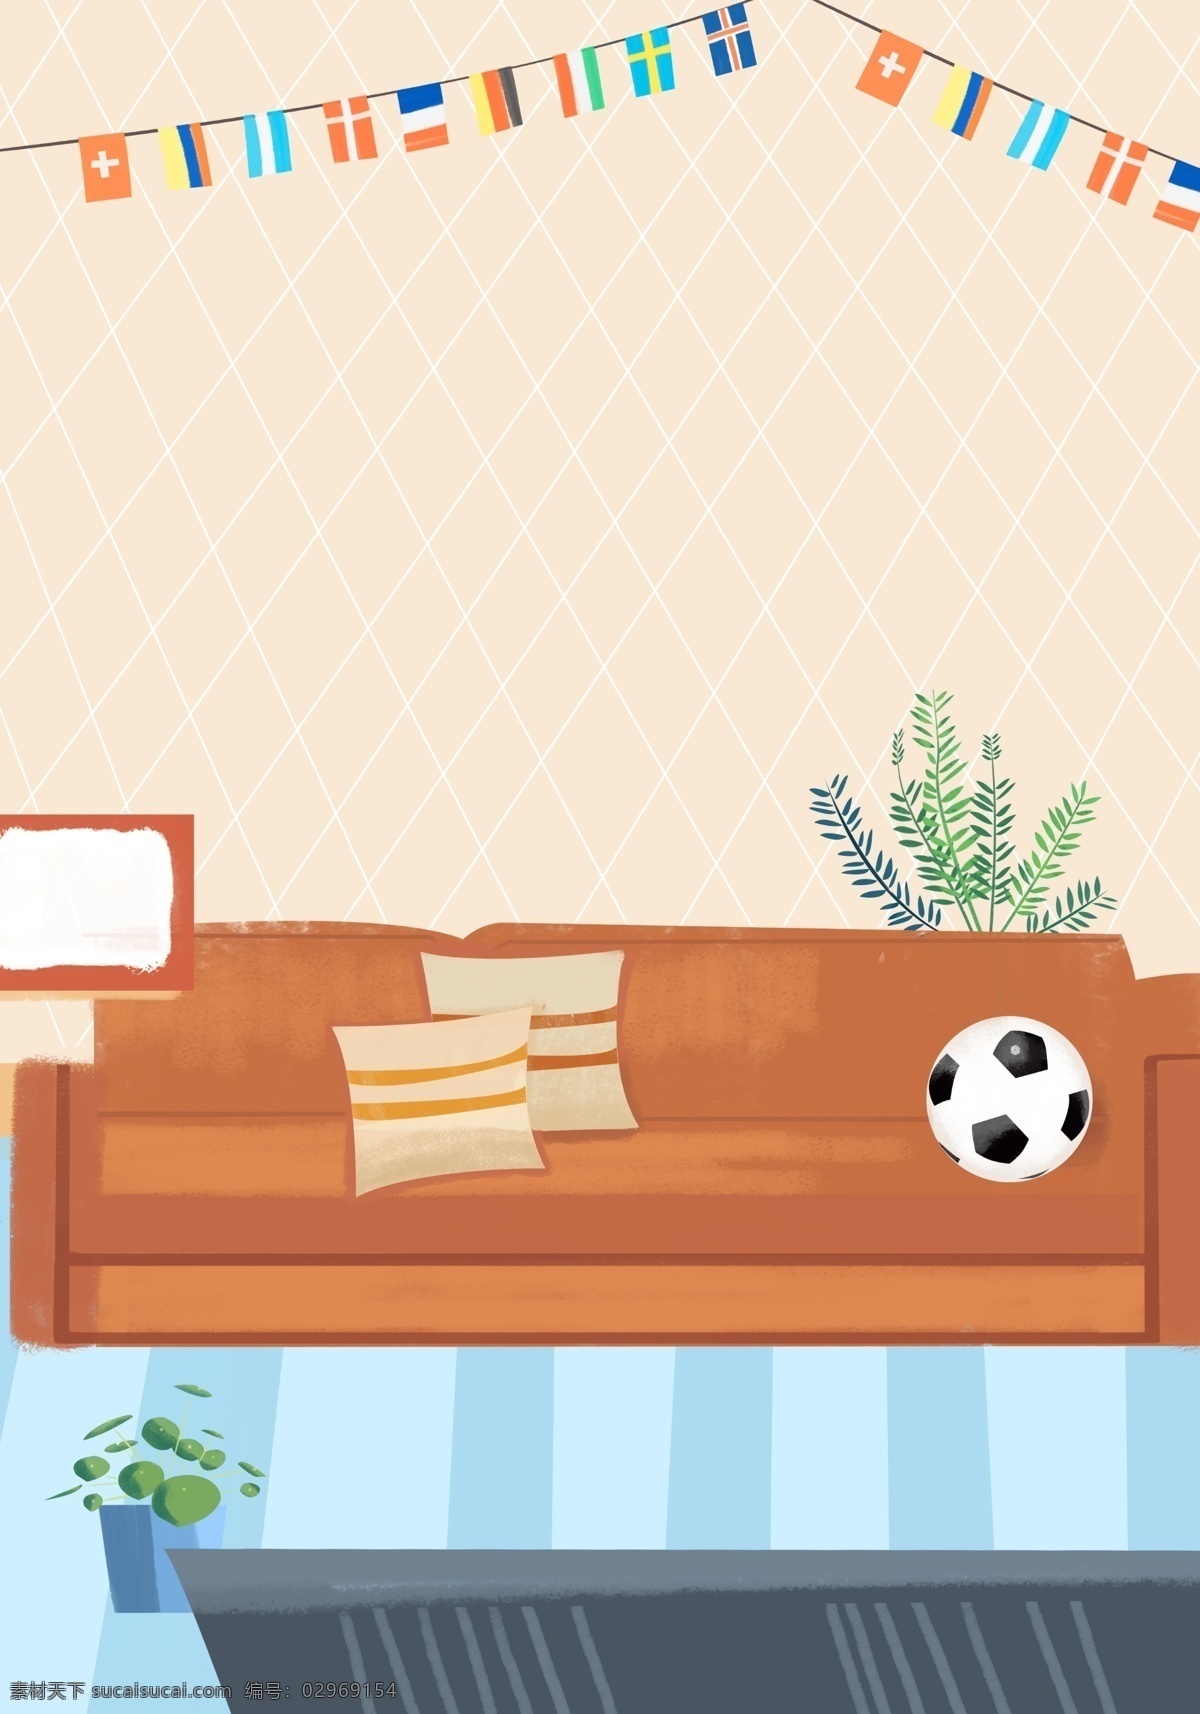 世界杯 小球 迷 欢呼 手机 图 温馨背景 室内插画 通用背景 居家生活插画 沙发 桌子 盆栽